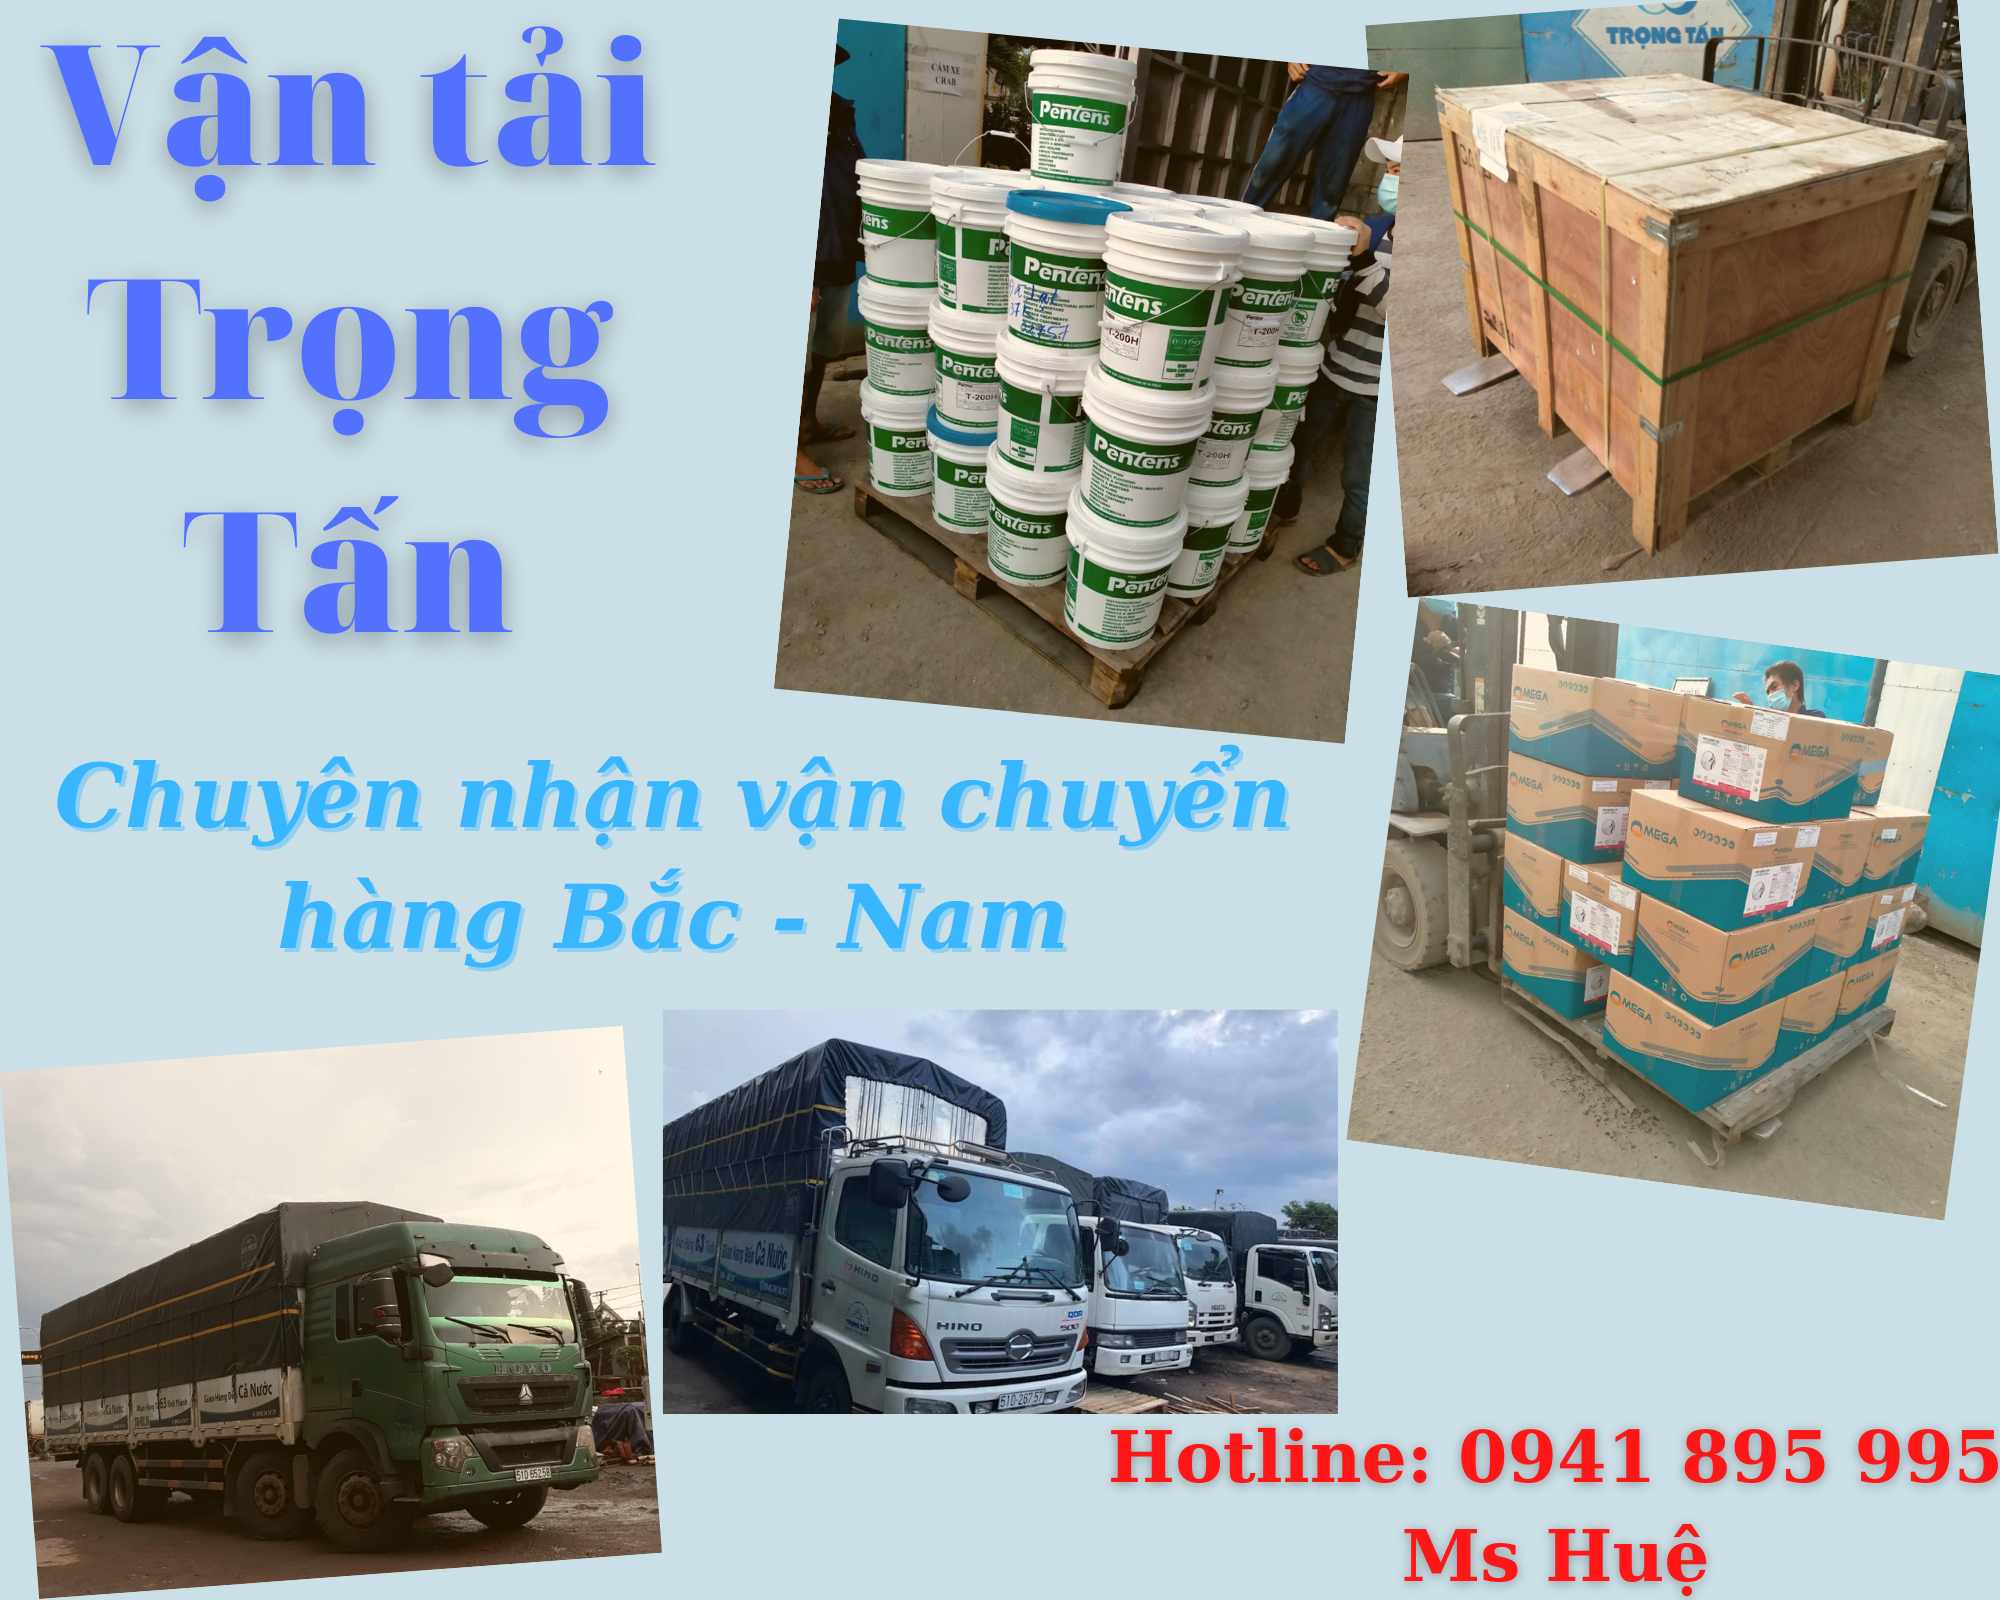 Thuê xe chuyển hàng Sài Gòn - Hà Nội